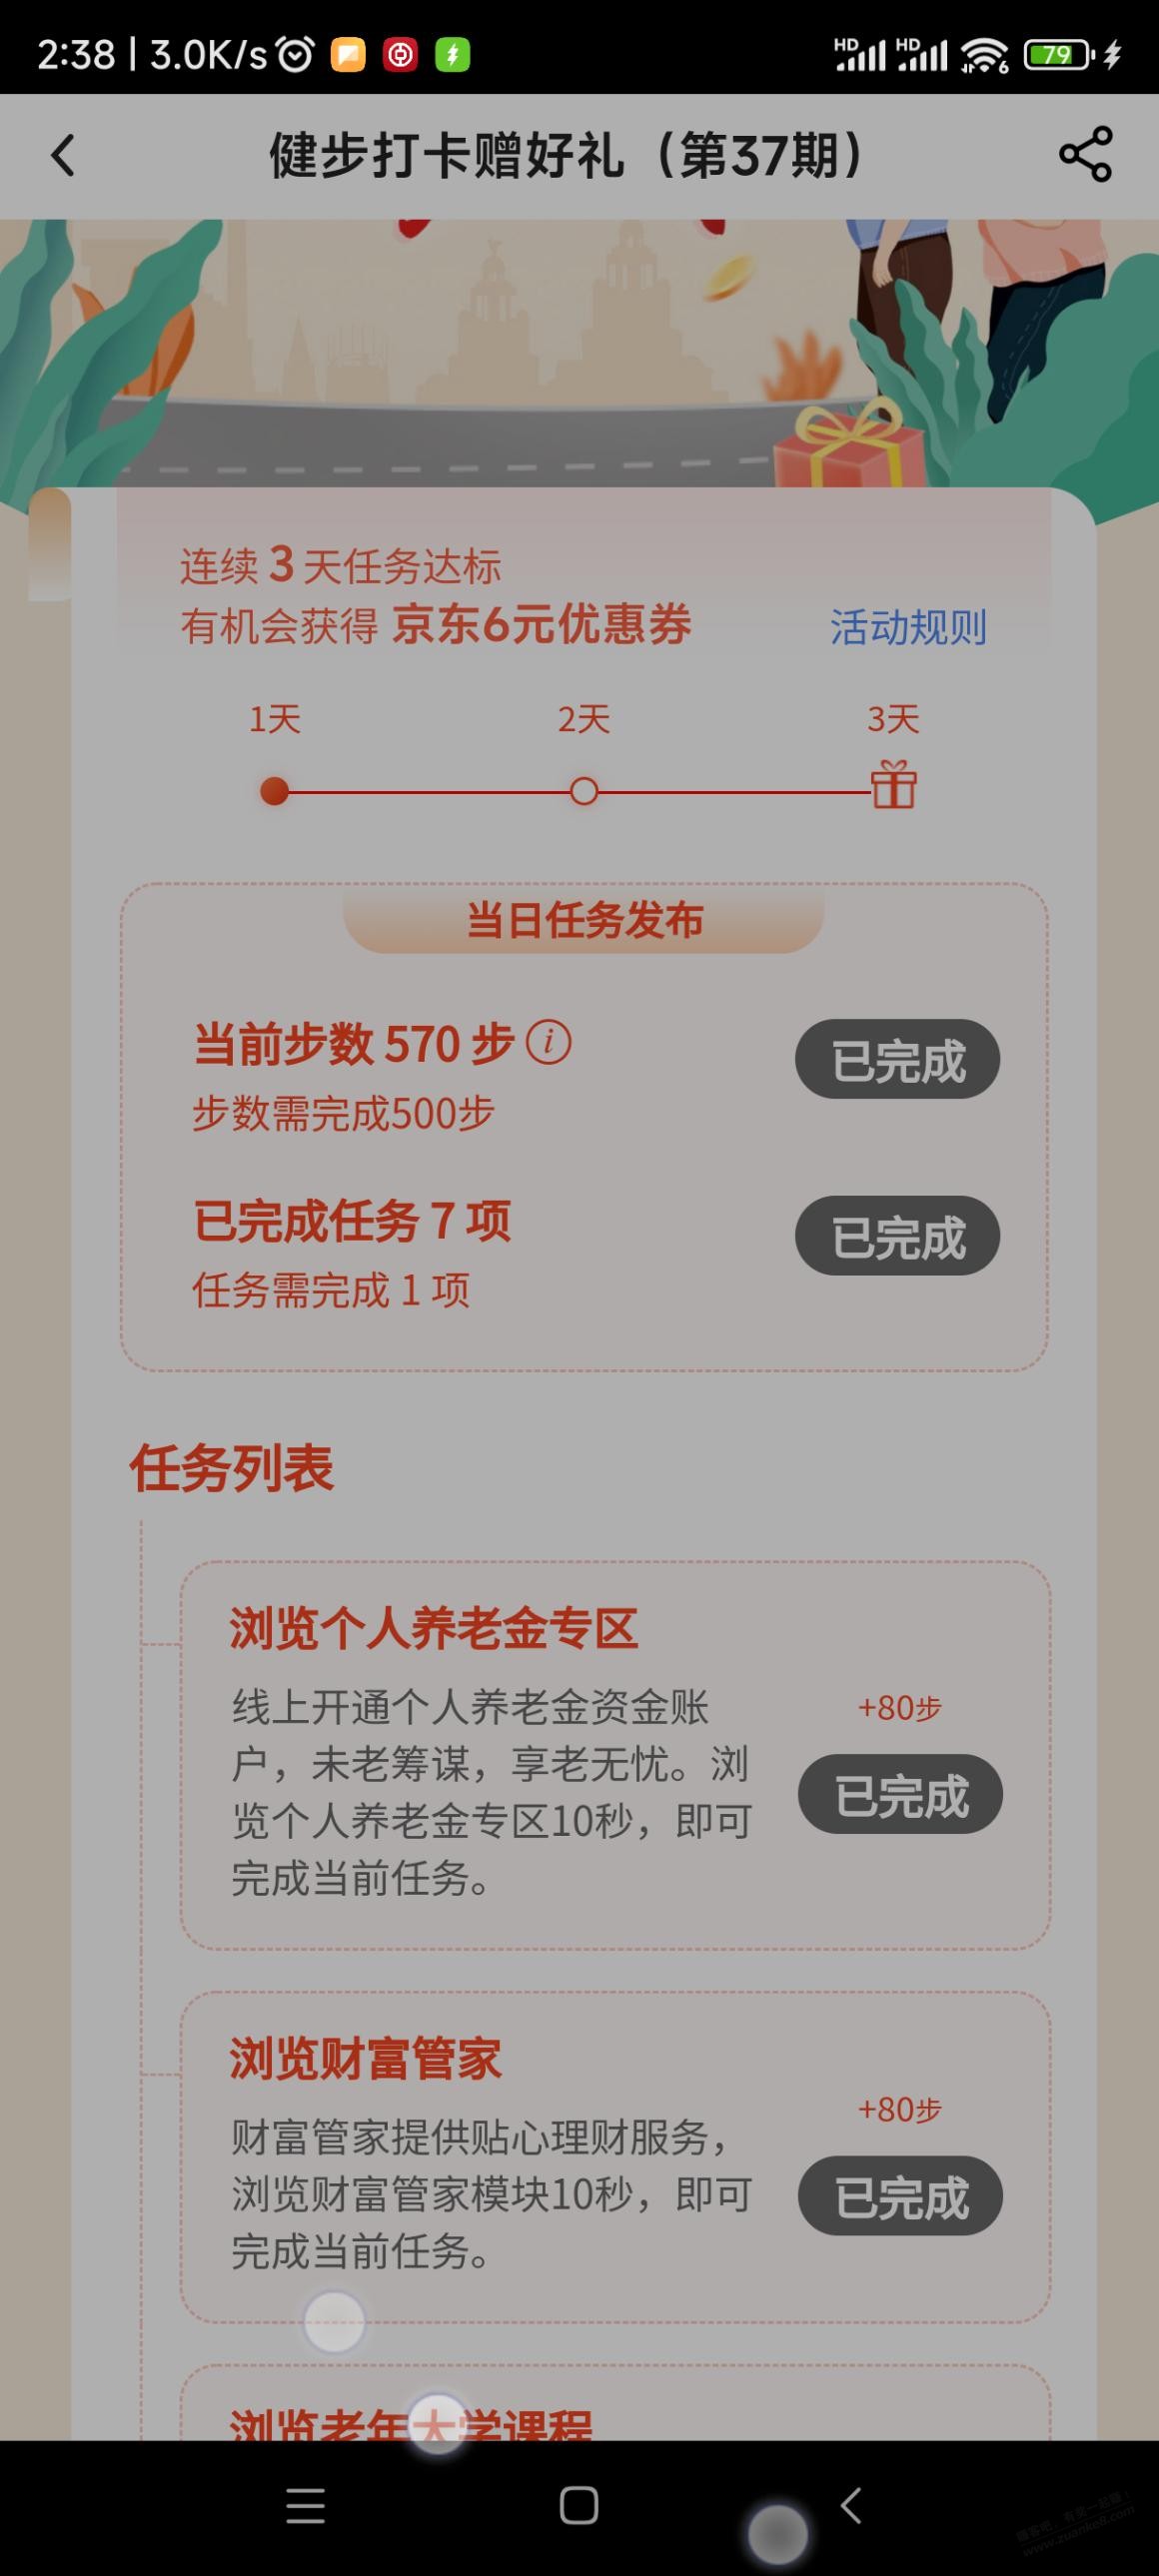 中行建步3天6元京东支付券-惠小助(52huixz.com)